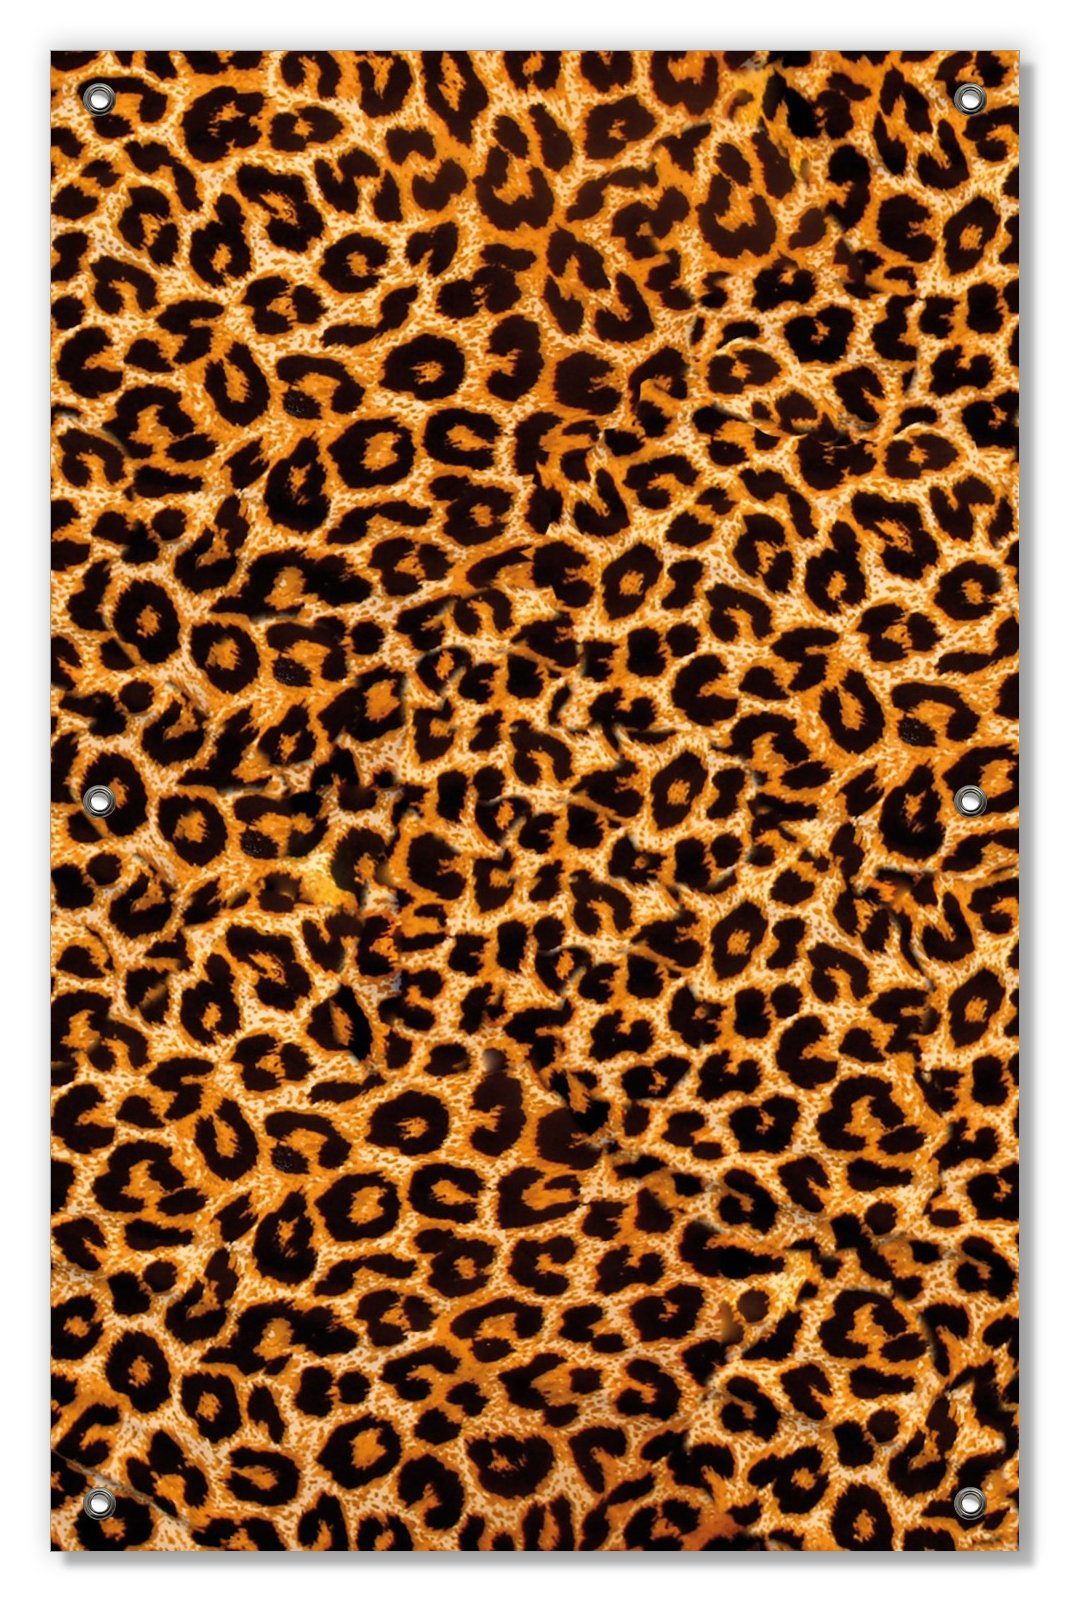 Sonnenschutz Leopardenmuster in orange schwarz, blickdicht, wiederablösbar wiederverwendbar und mit Wallario, Saugnäpfen